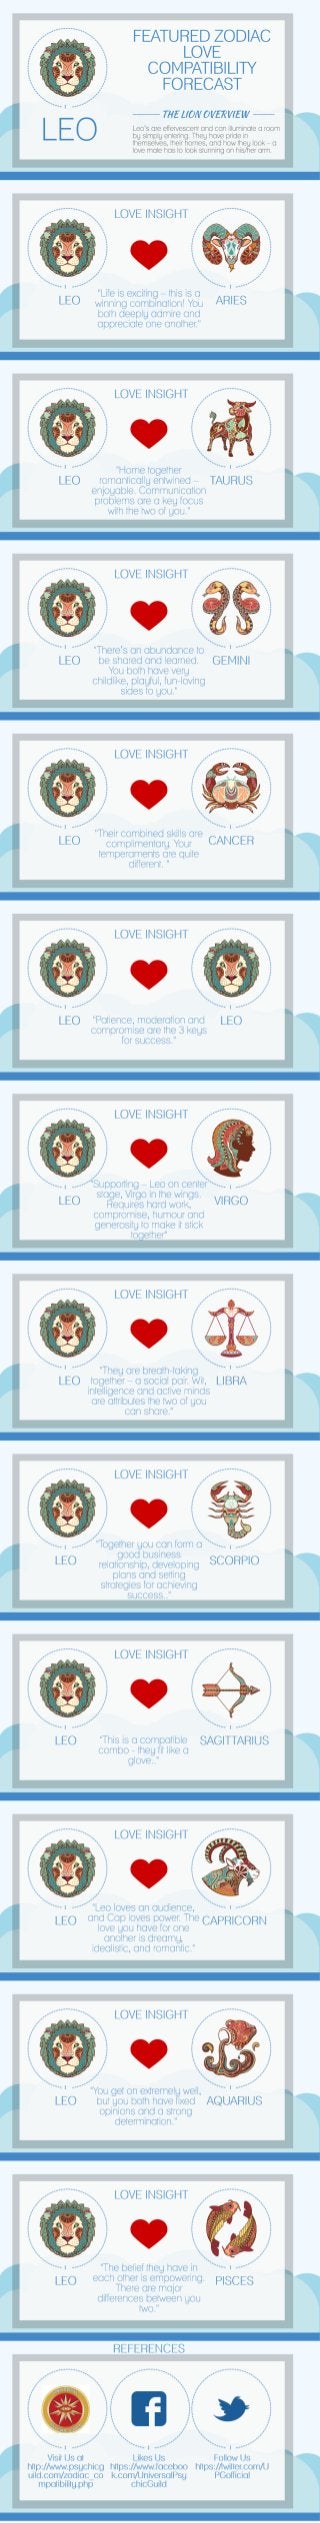 Featured Zodiac Love Compatibility Leo